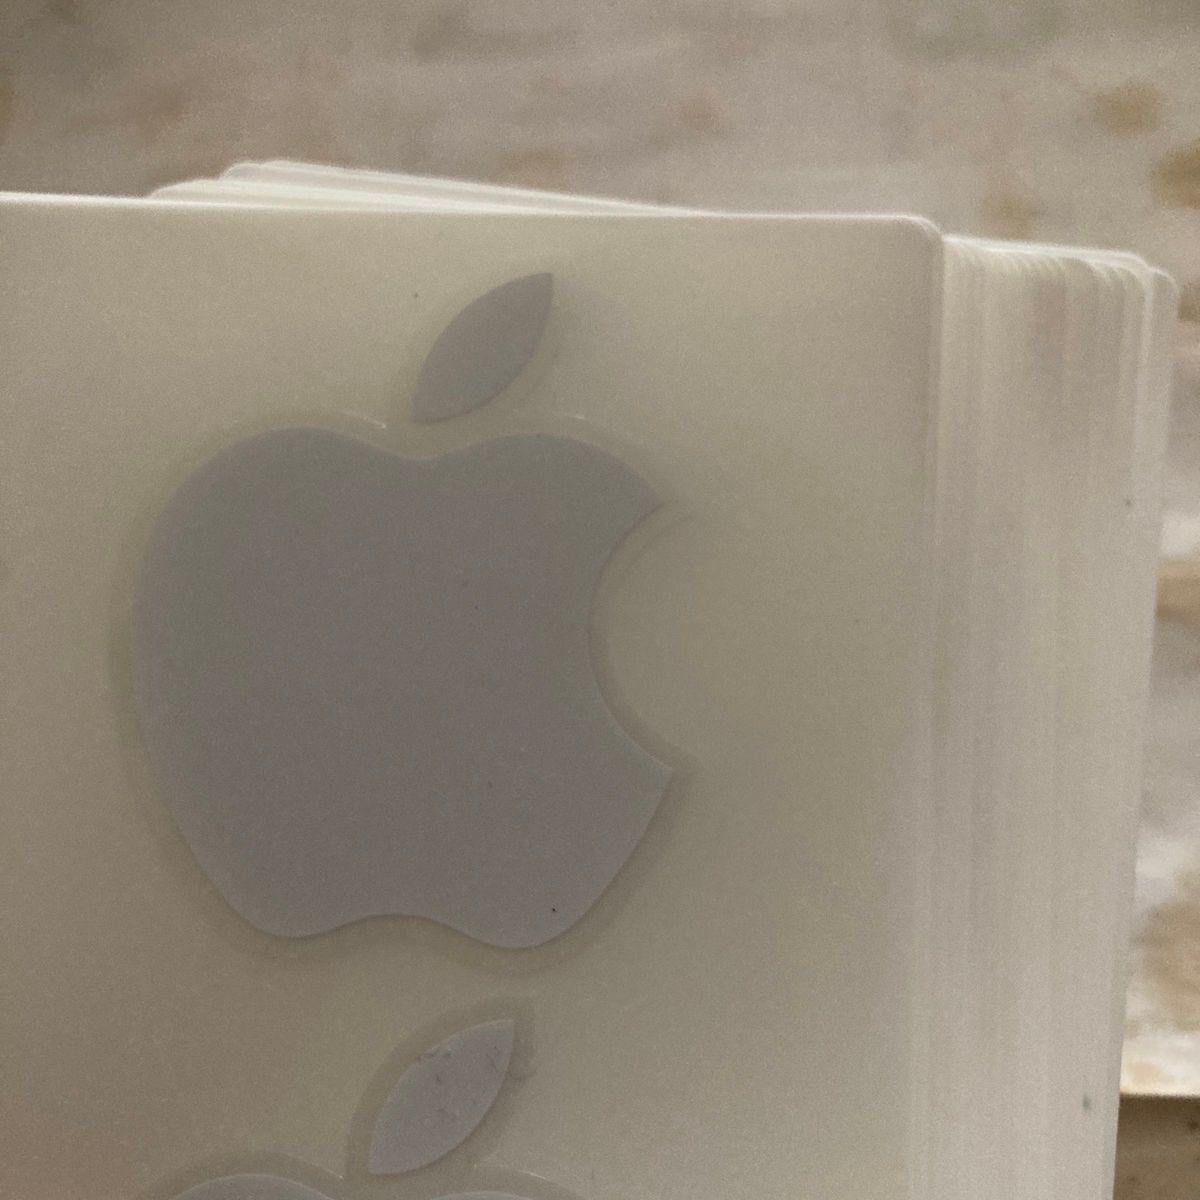 Apple iPhone iPad りんご 純正品 アップル ステッカー 15枚組になります！これだけあるならあちこちに貼れますよ